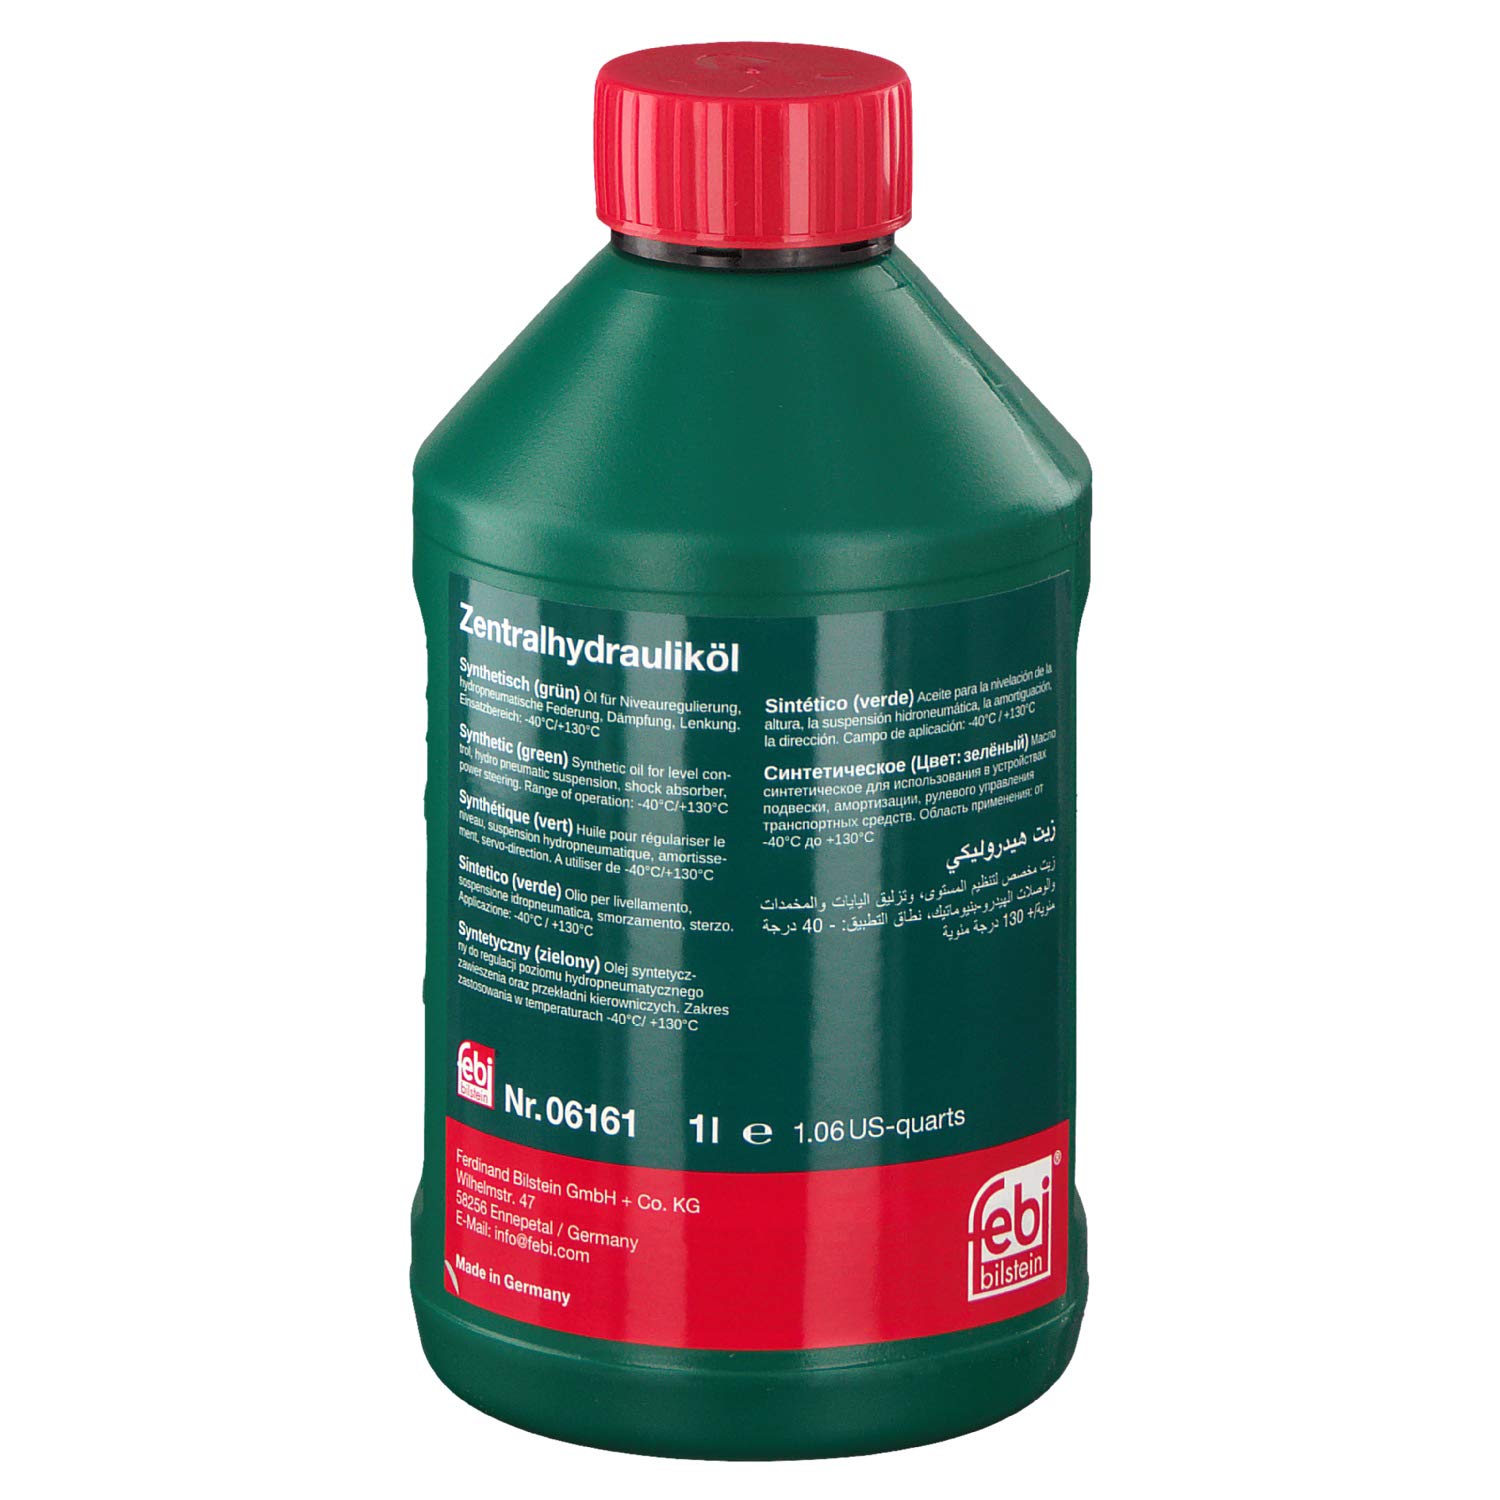 febi bilstein 06161 Hydrauliköl für die Zentralhydraulik, Servolenkung und Niveauregulierung , 1 Liter von febi bilstein